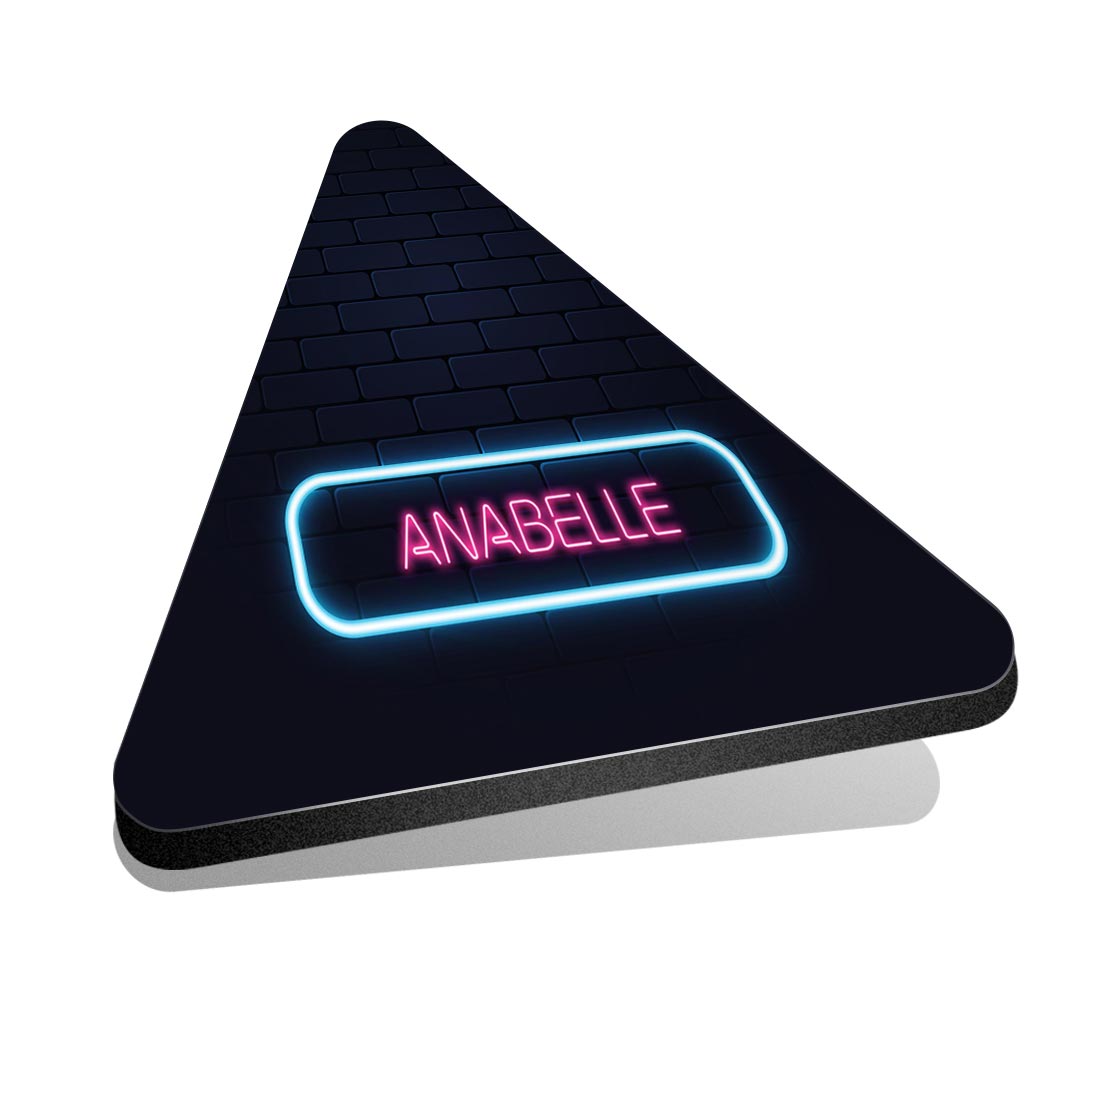 1x frigorifero triangolo MDF magnete insegna al neon design nome anabelle #352721 - Foto 1 di 1